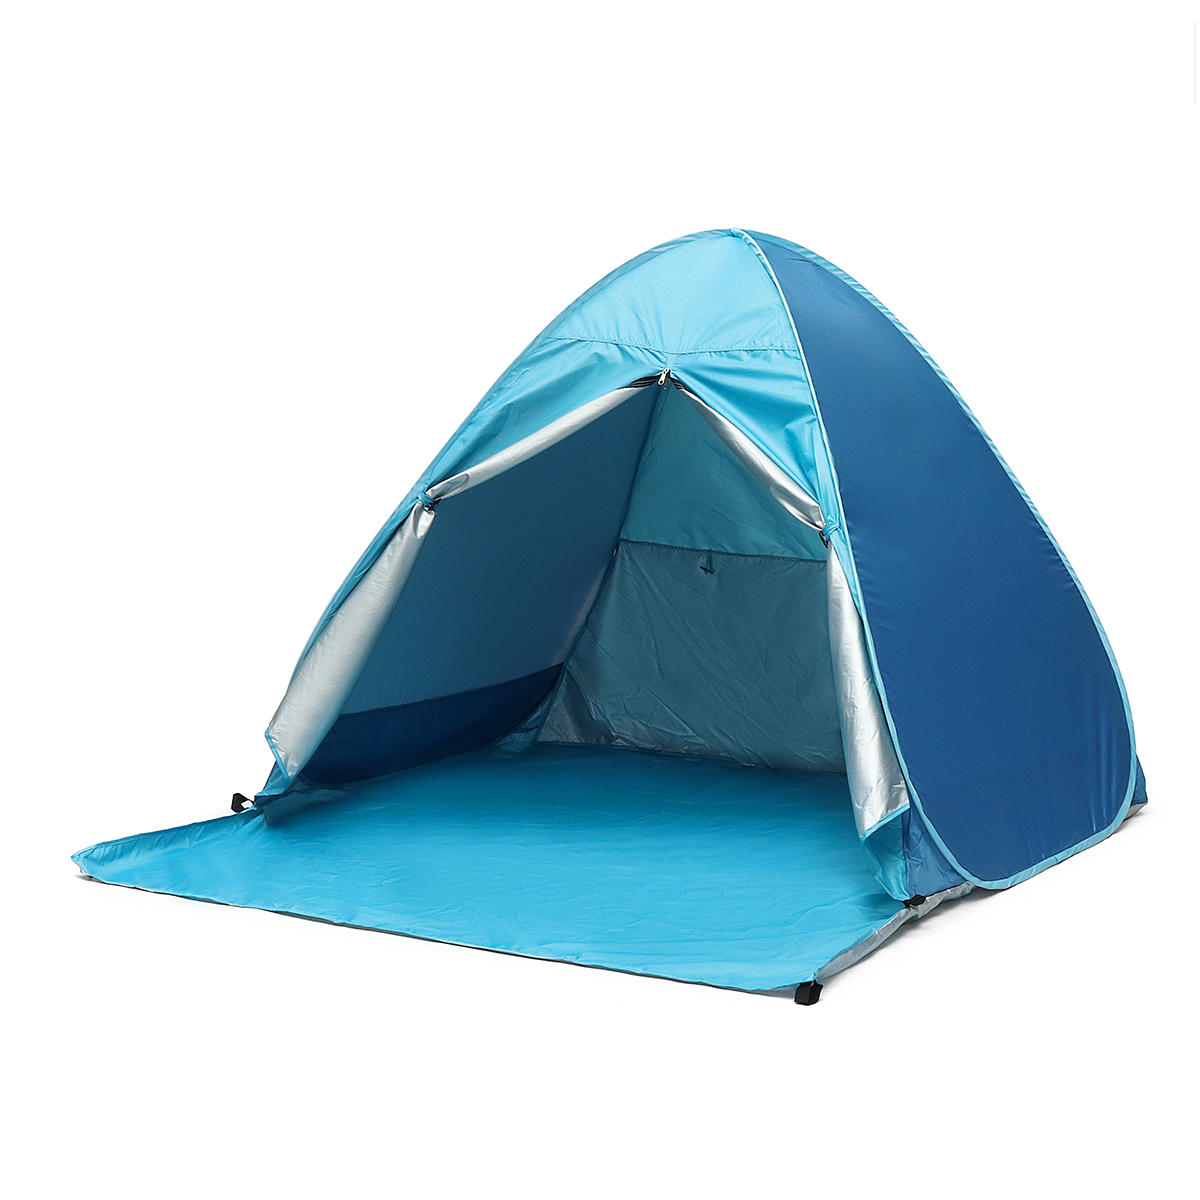 IPRee Outdoor Tente de plage et de camping pour 4 personnes, imperméable, anti-UV, automatique, avec auvent